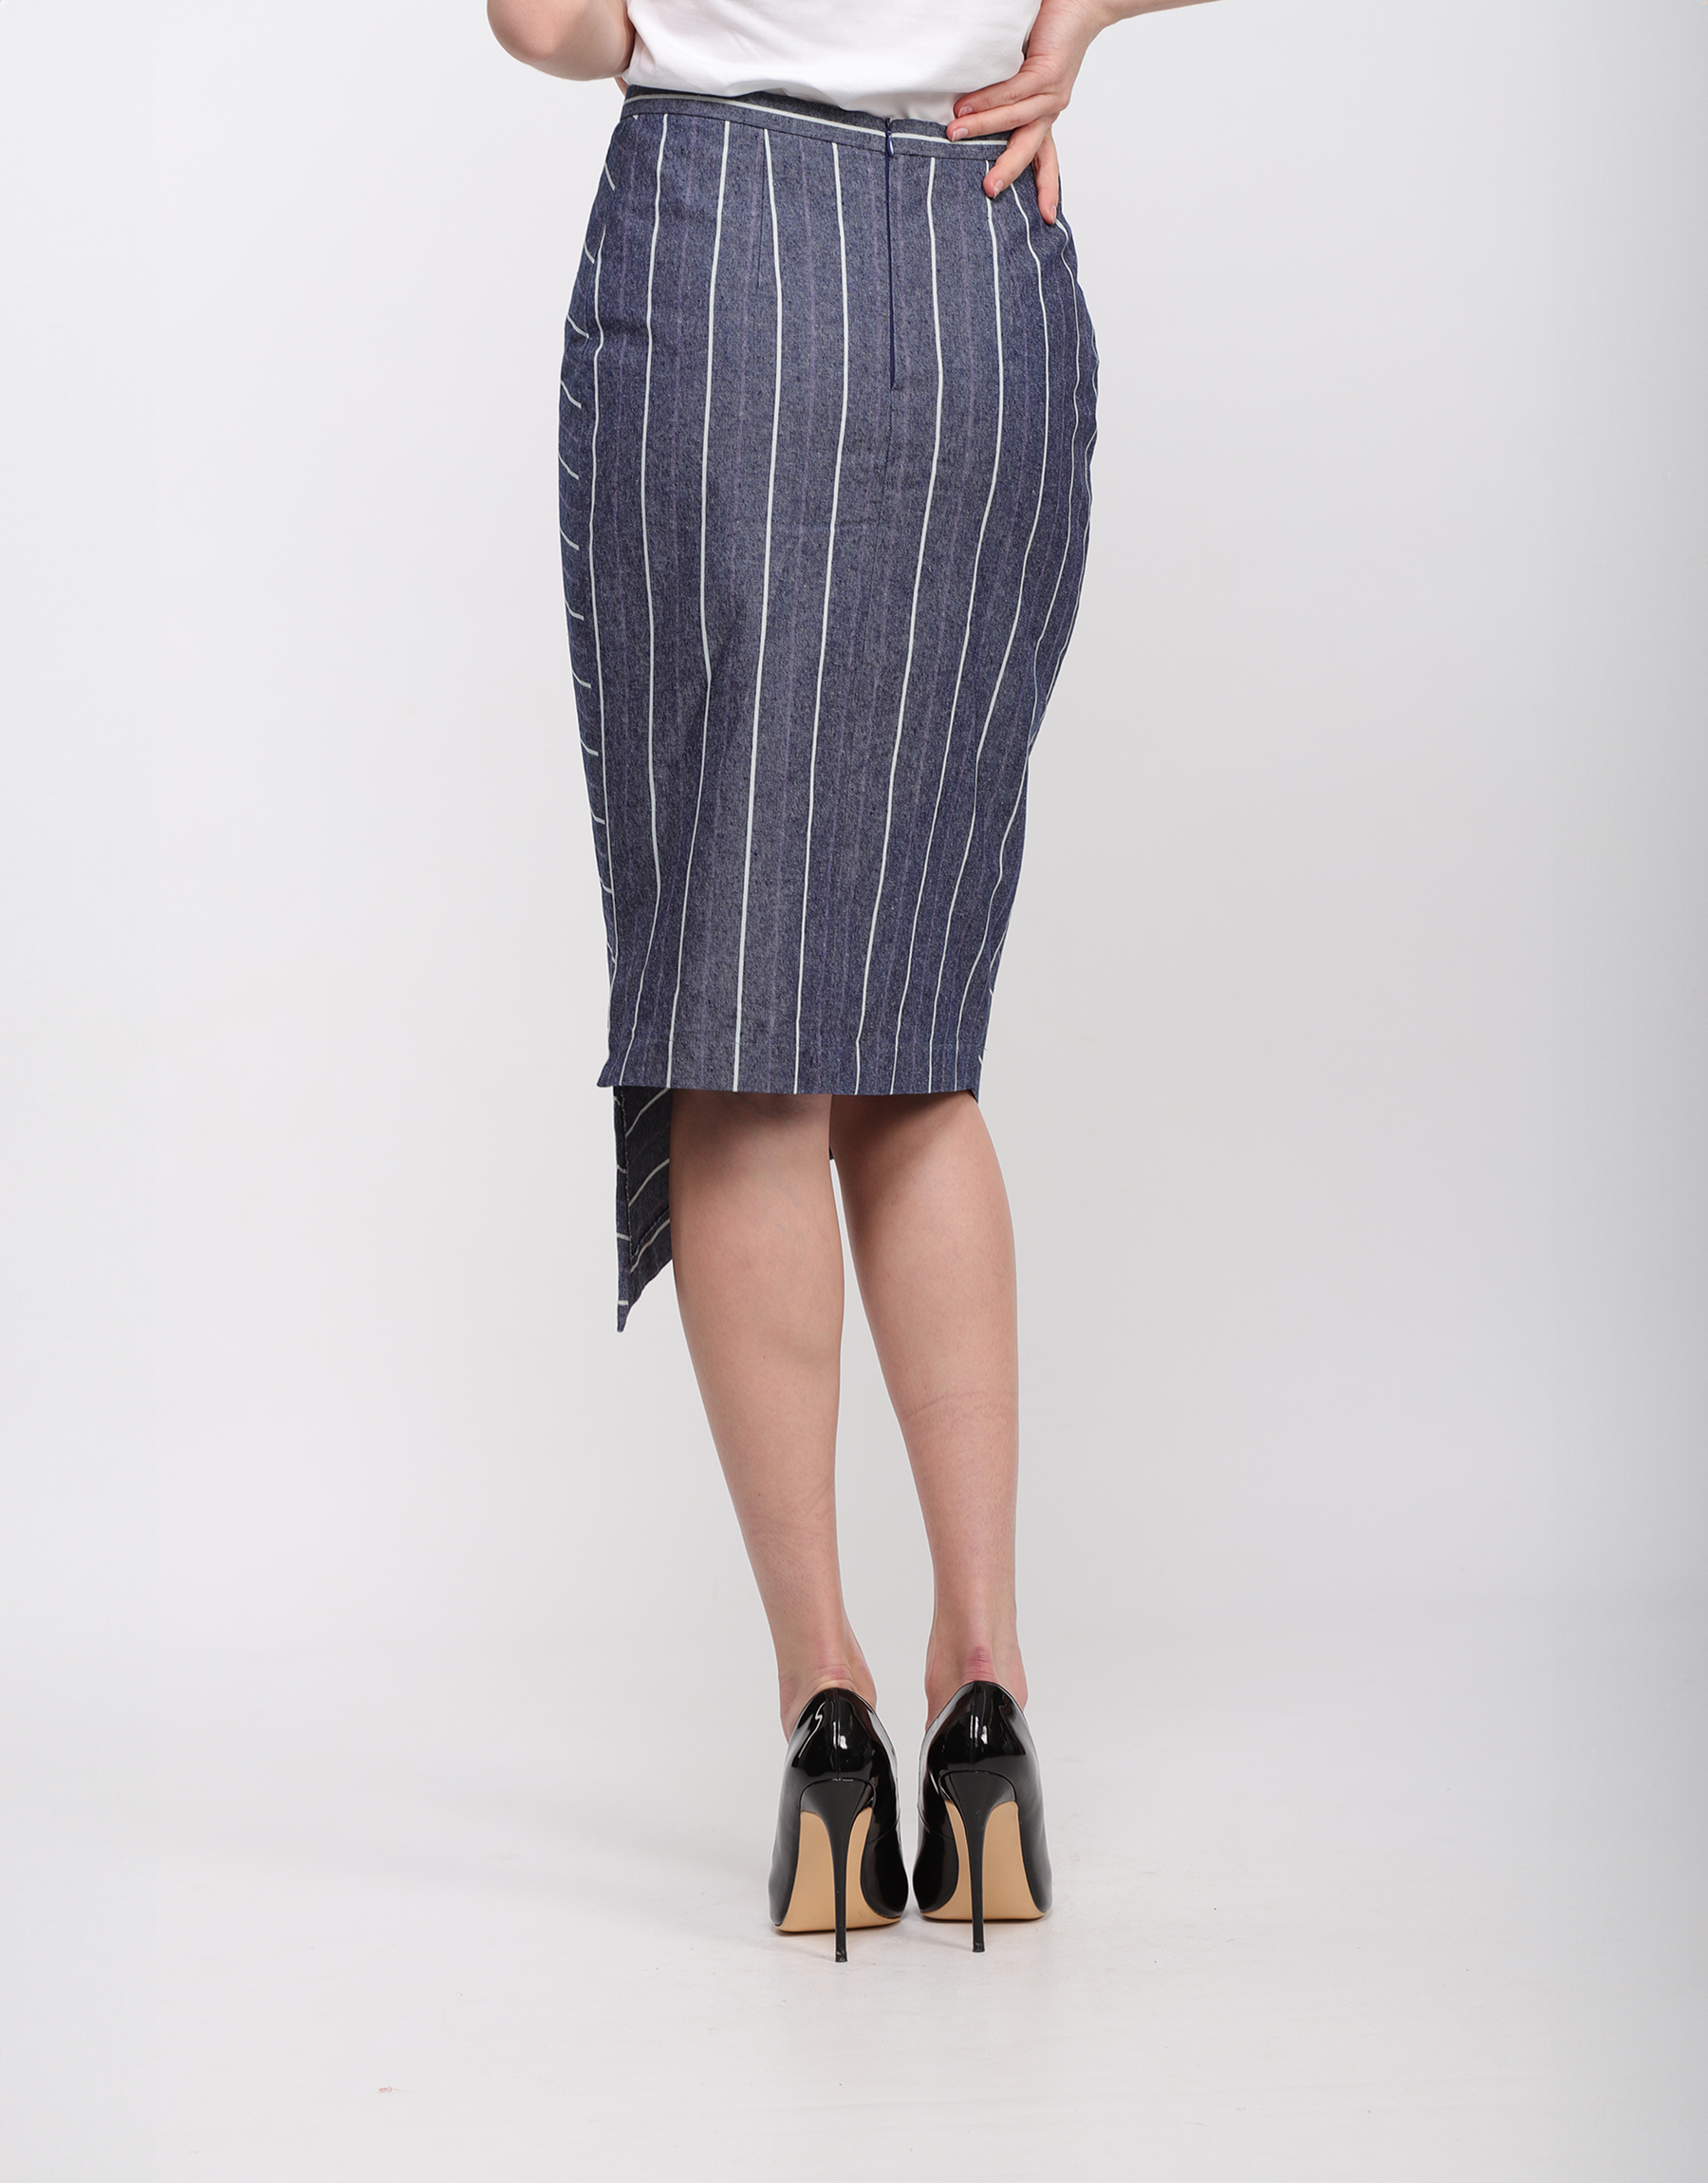 Asymmetrical pencil midi skirt in blue cotton with white stripes